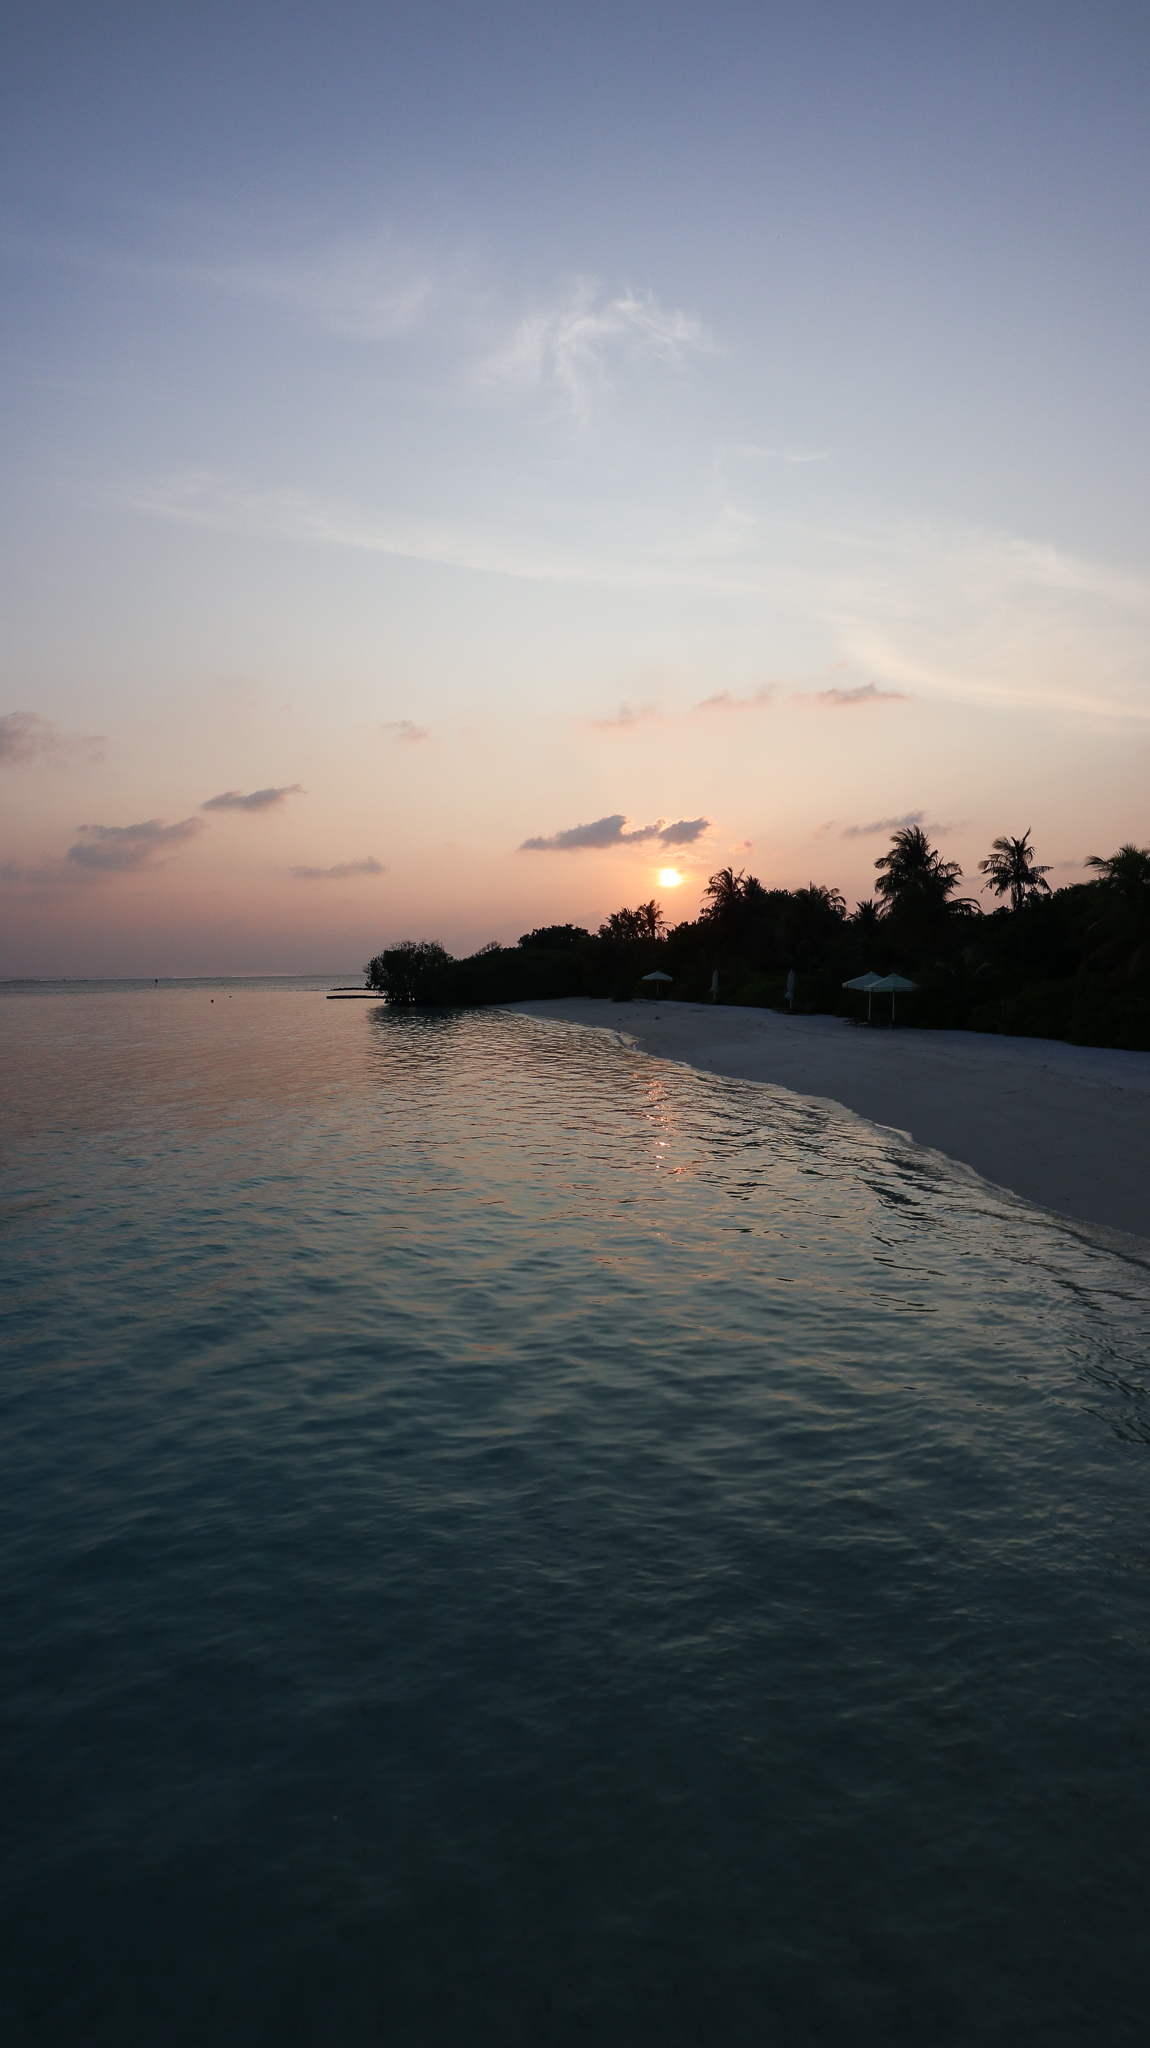 Le Meridien Maldives - spa review